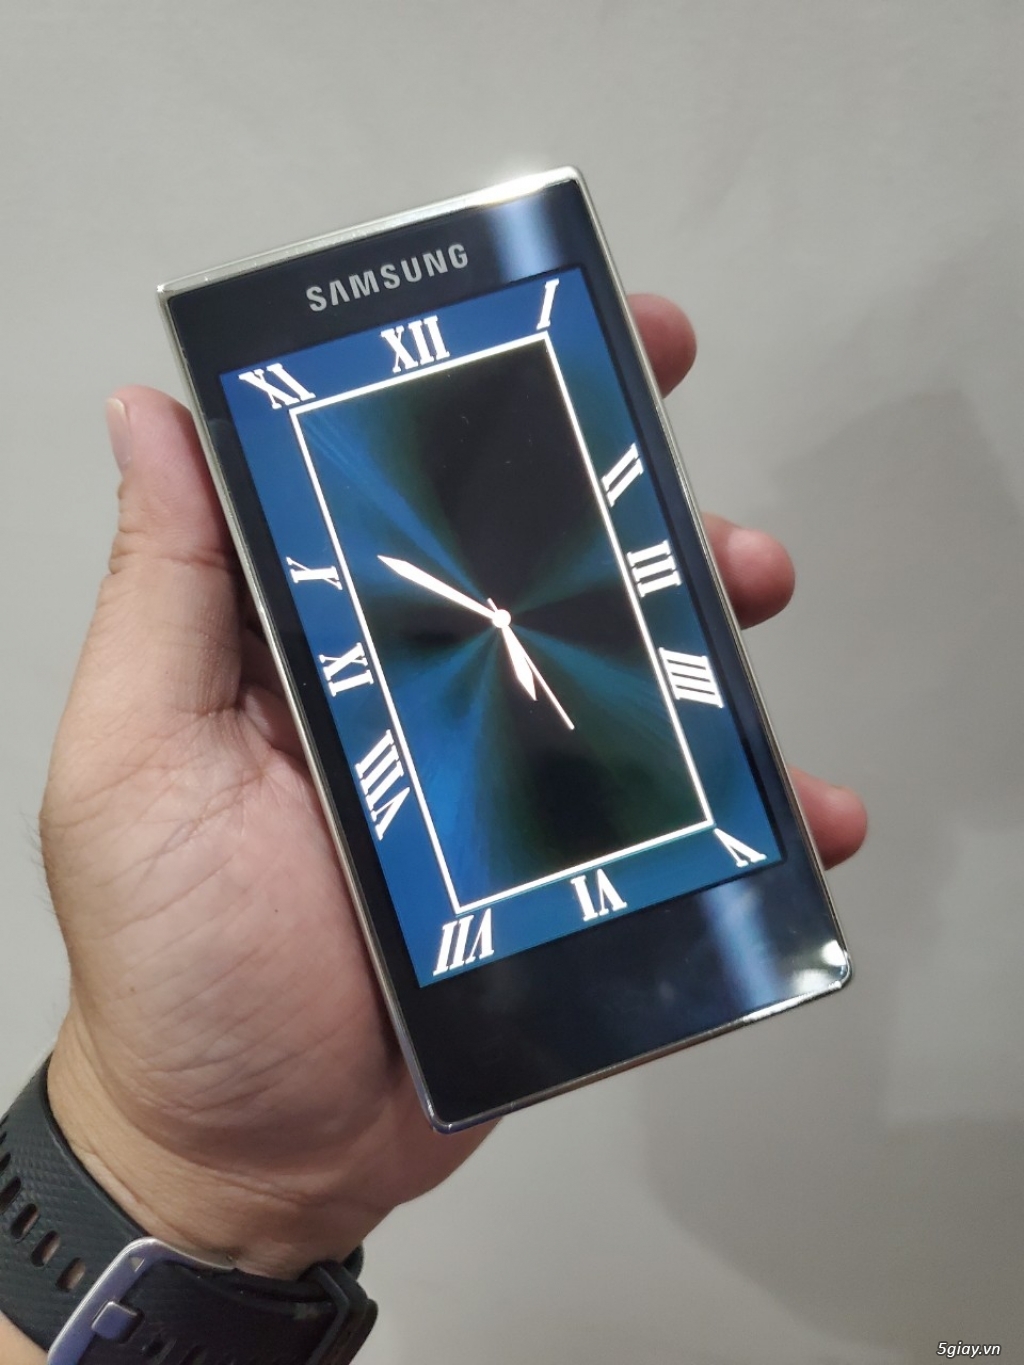 Hàng độc: Samsung G9198 nắp gập 2 màn hình đời cuối màu xanh siêu đẹp - 2